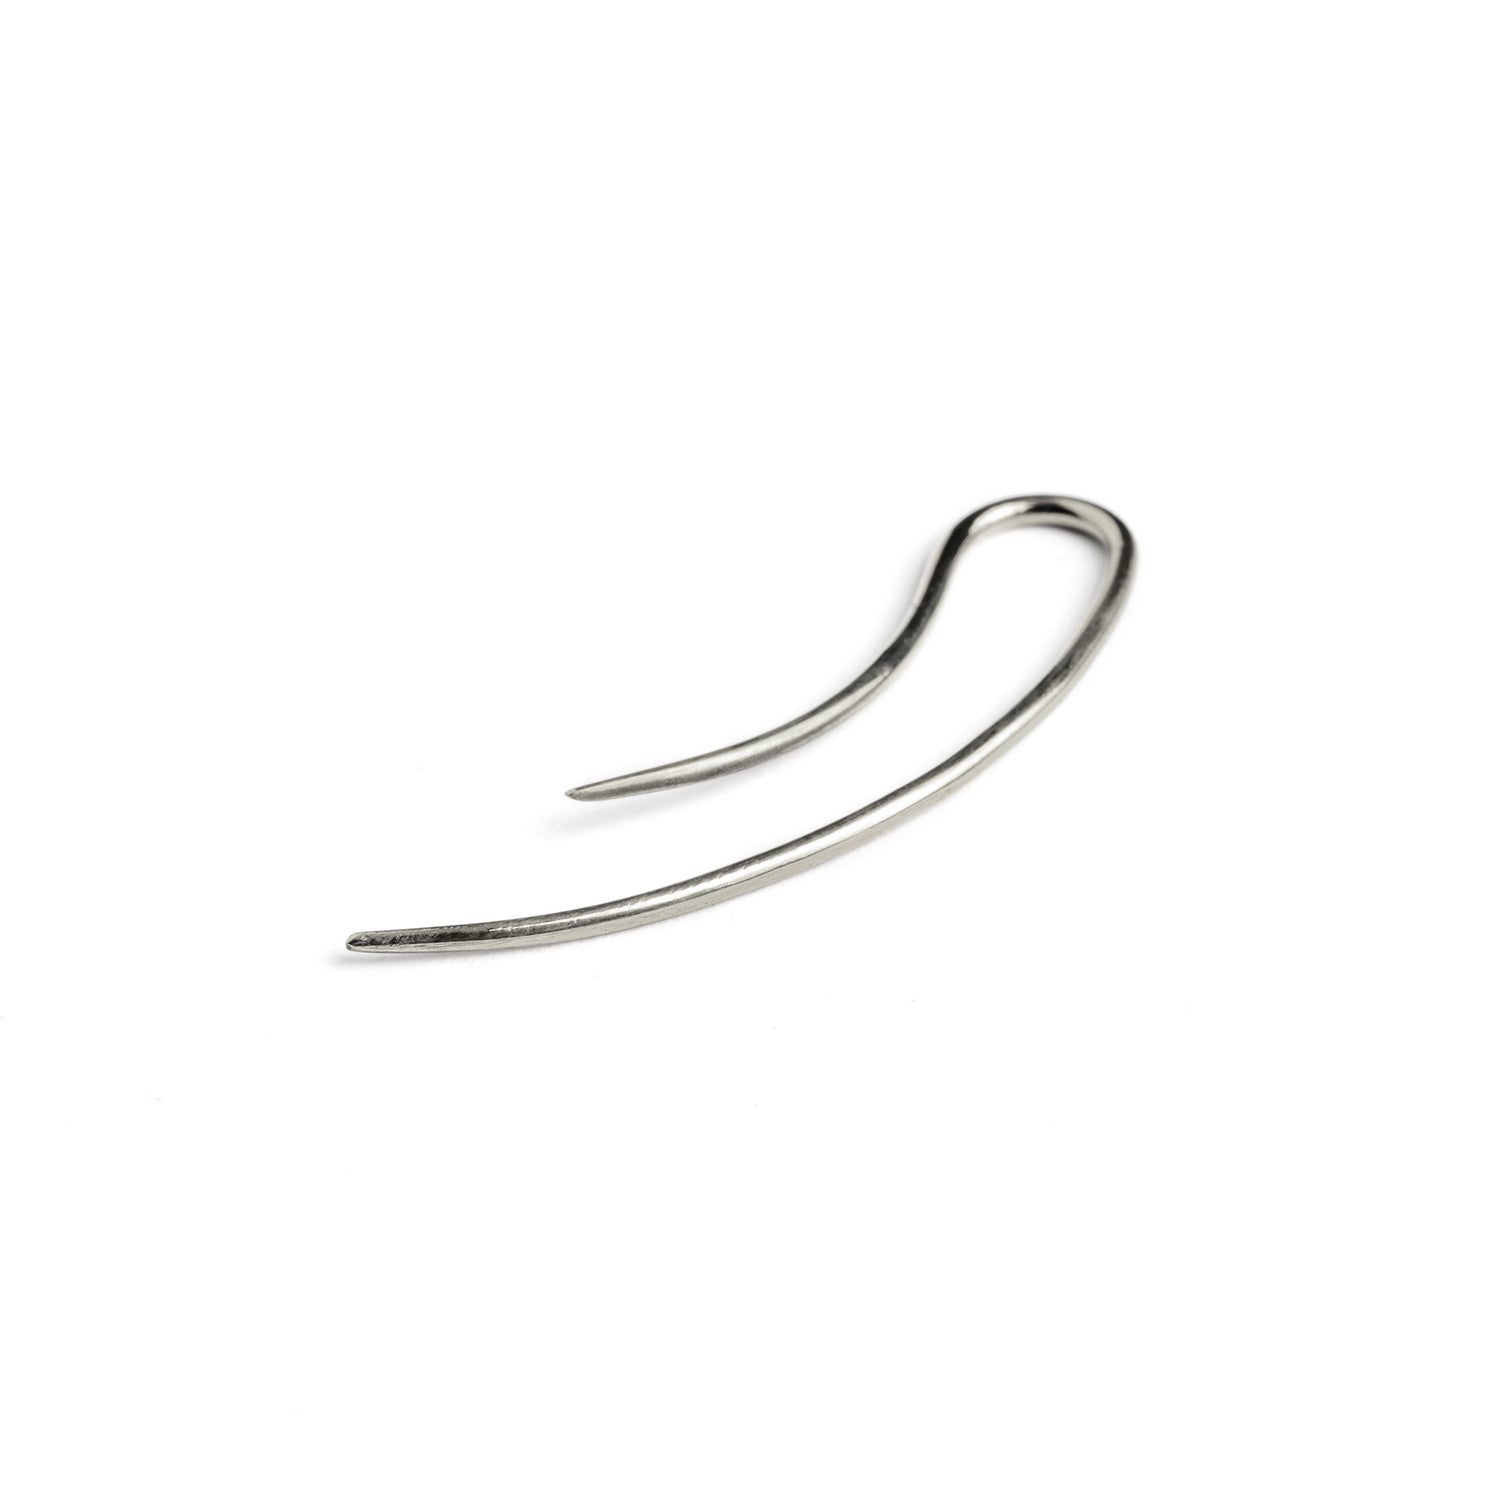 single silver wire long hook earring back side view